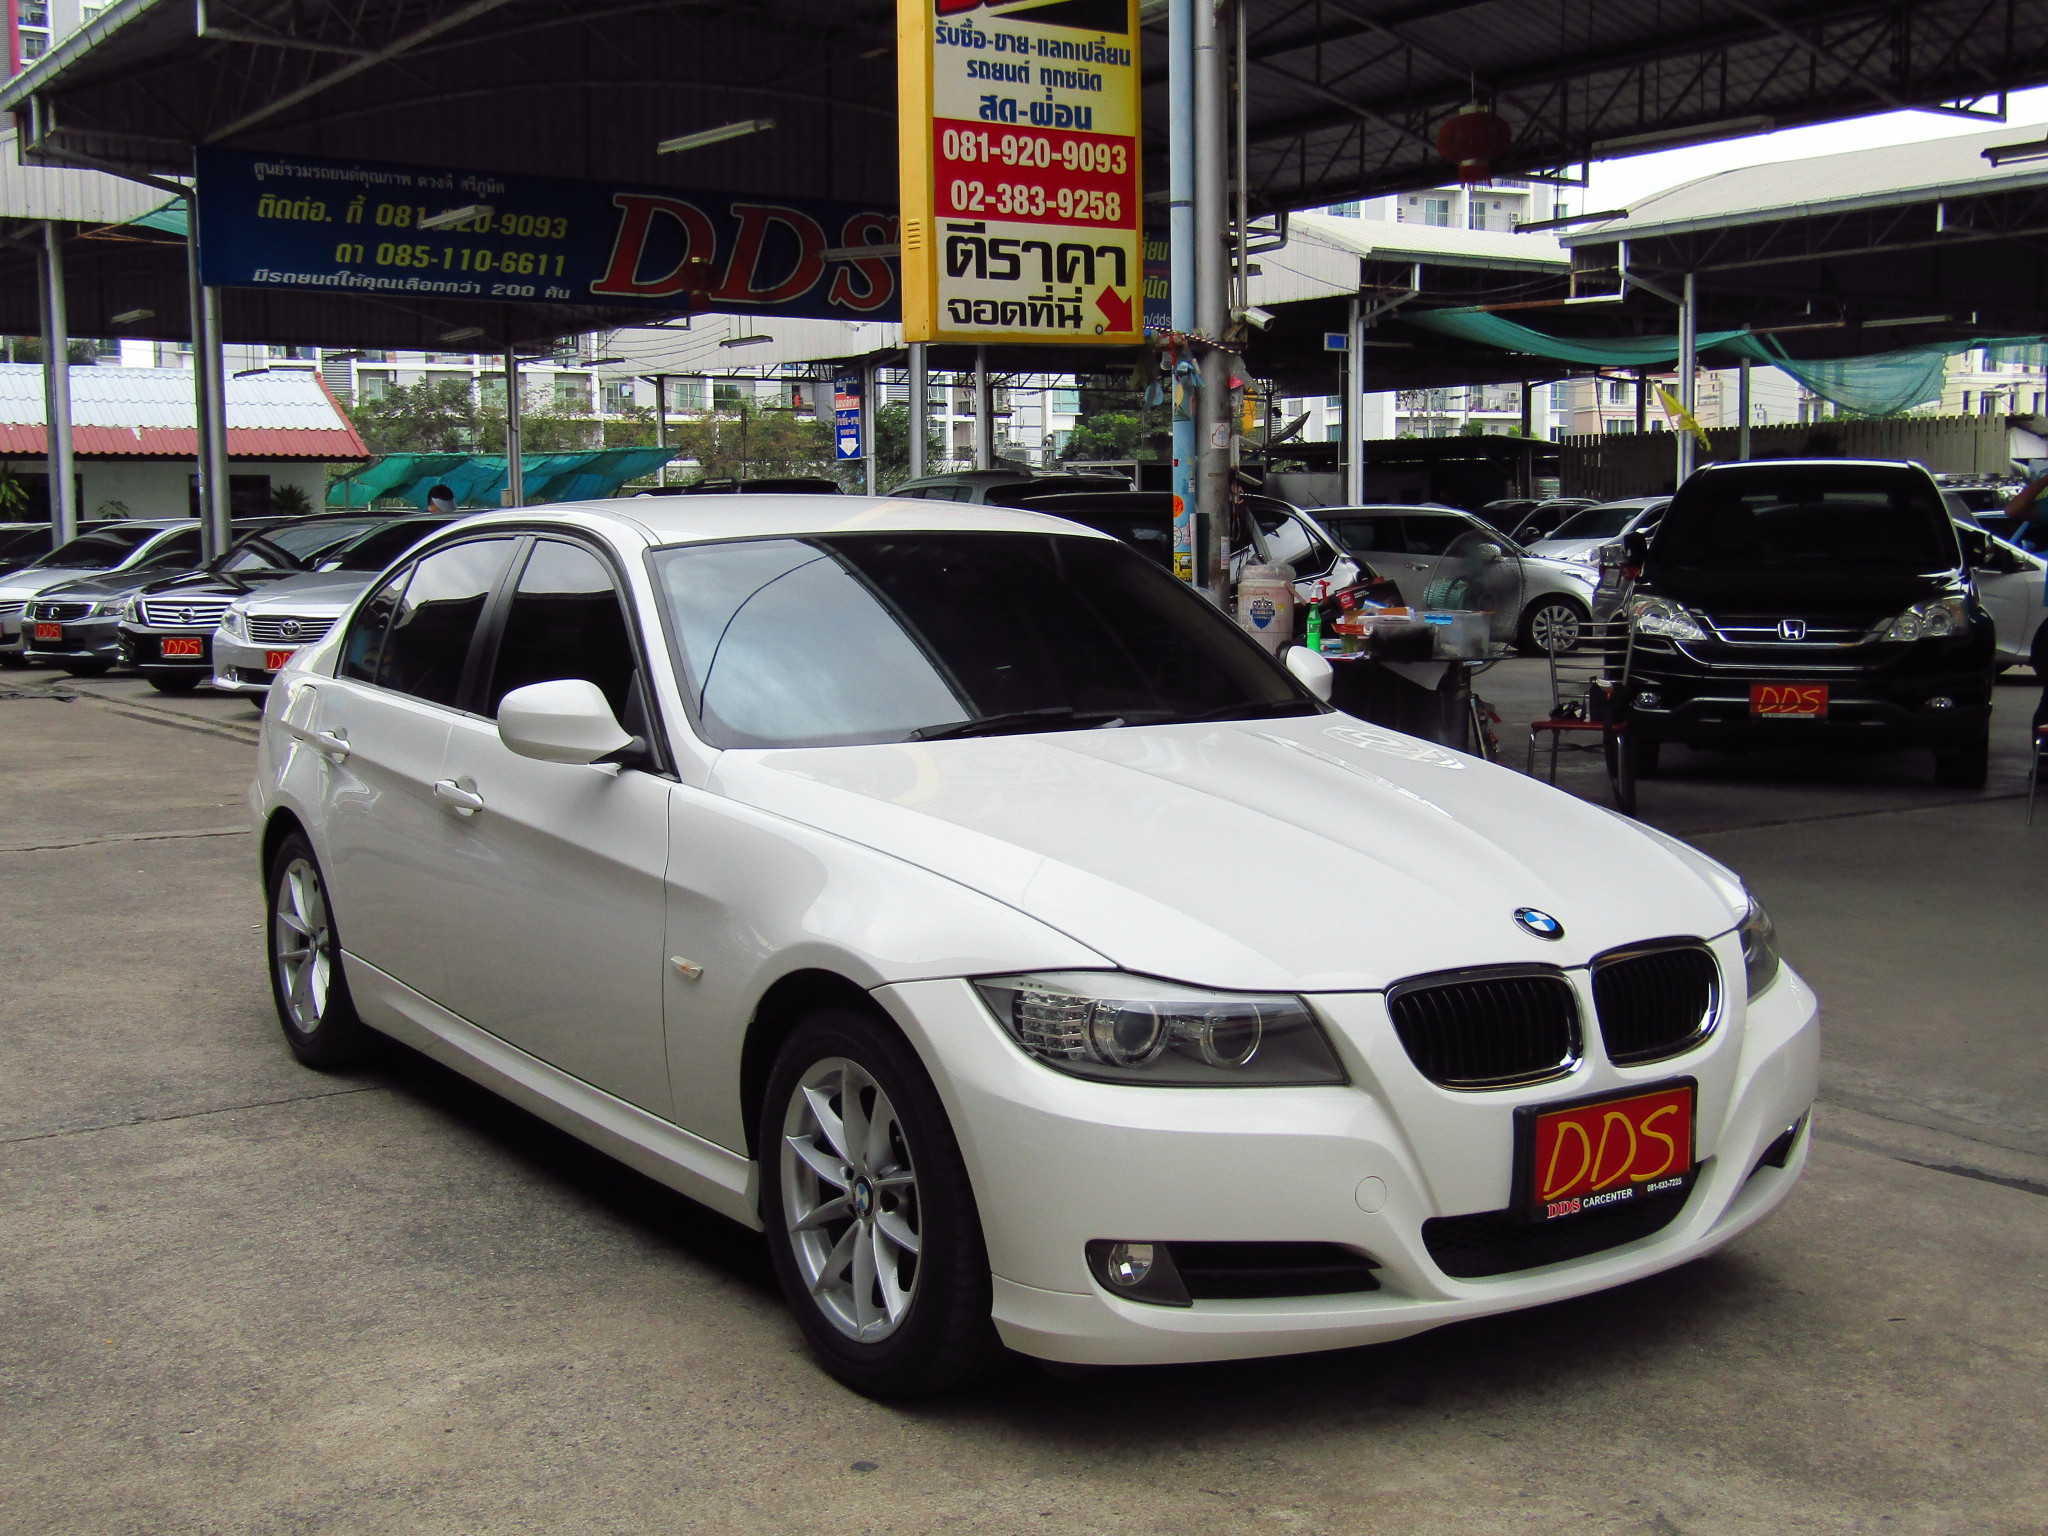 รถมือสอง BMW 318i  2012 ขายอยู่บนเว็บไซต์ตลาดรถออนไลน์ GUCARS